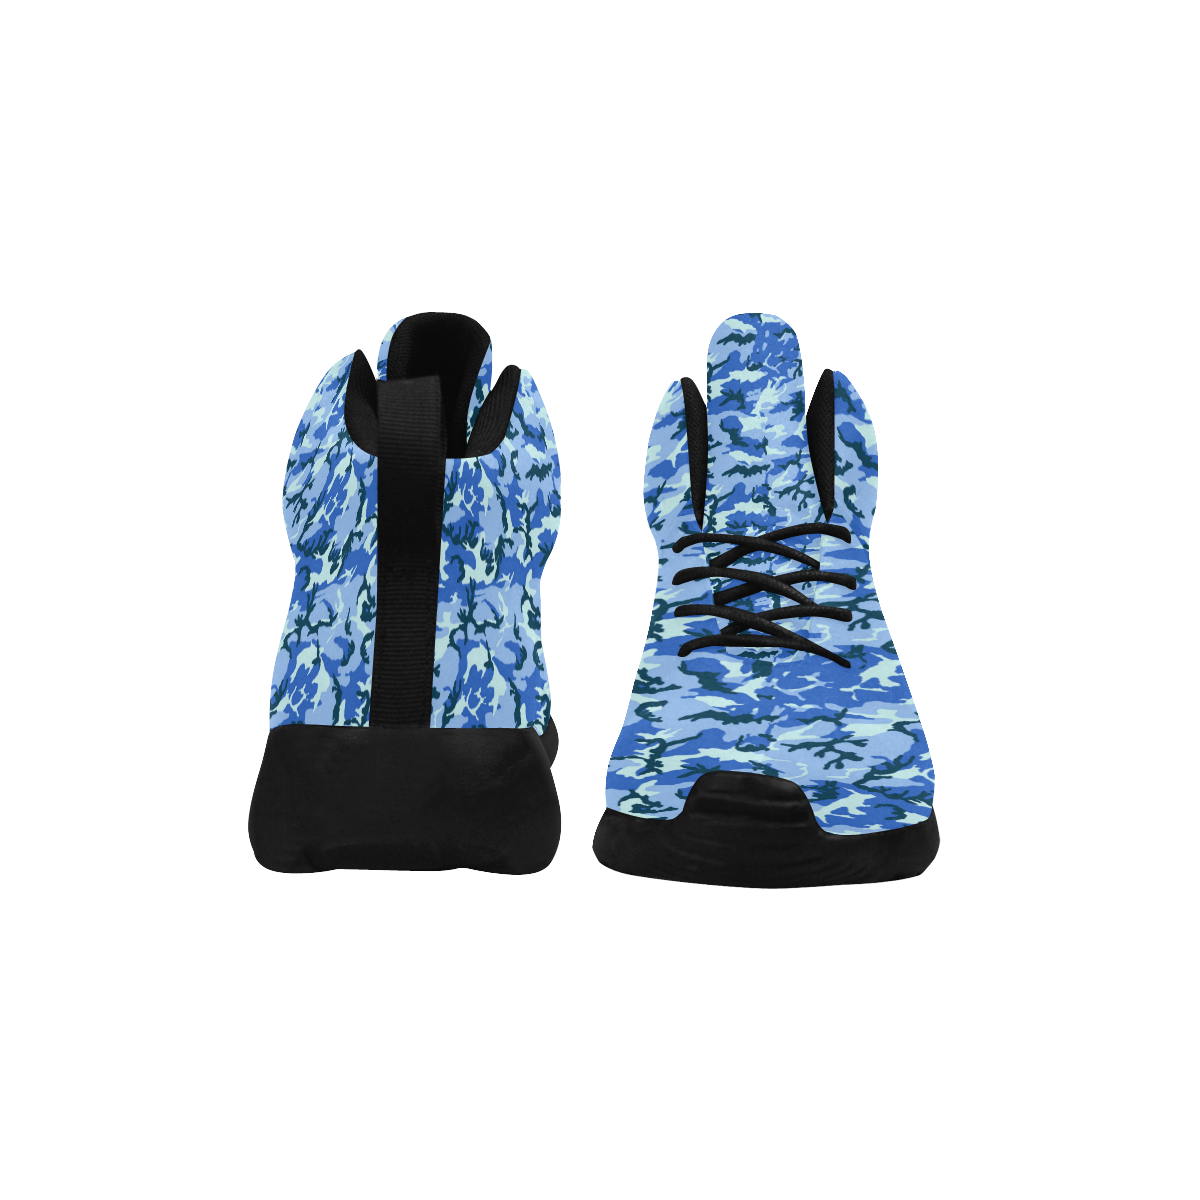 Woodland Blue Camouflage Women's Chukka Training Shoes/Large Size (Model 57502)